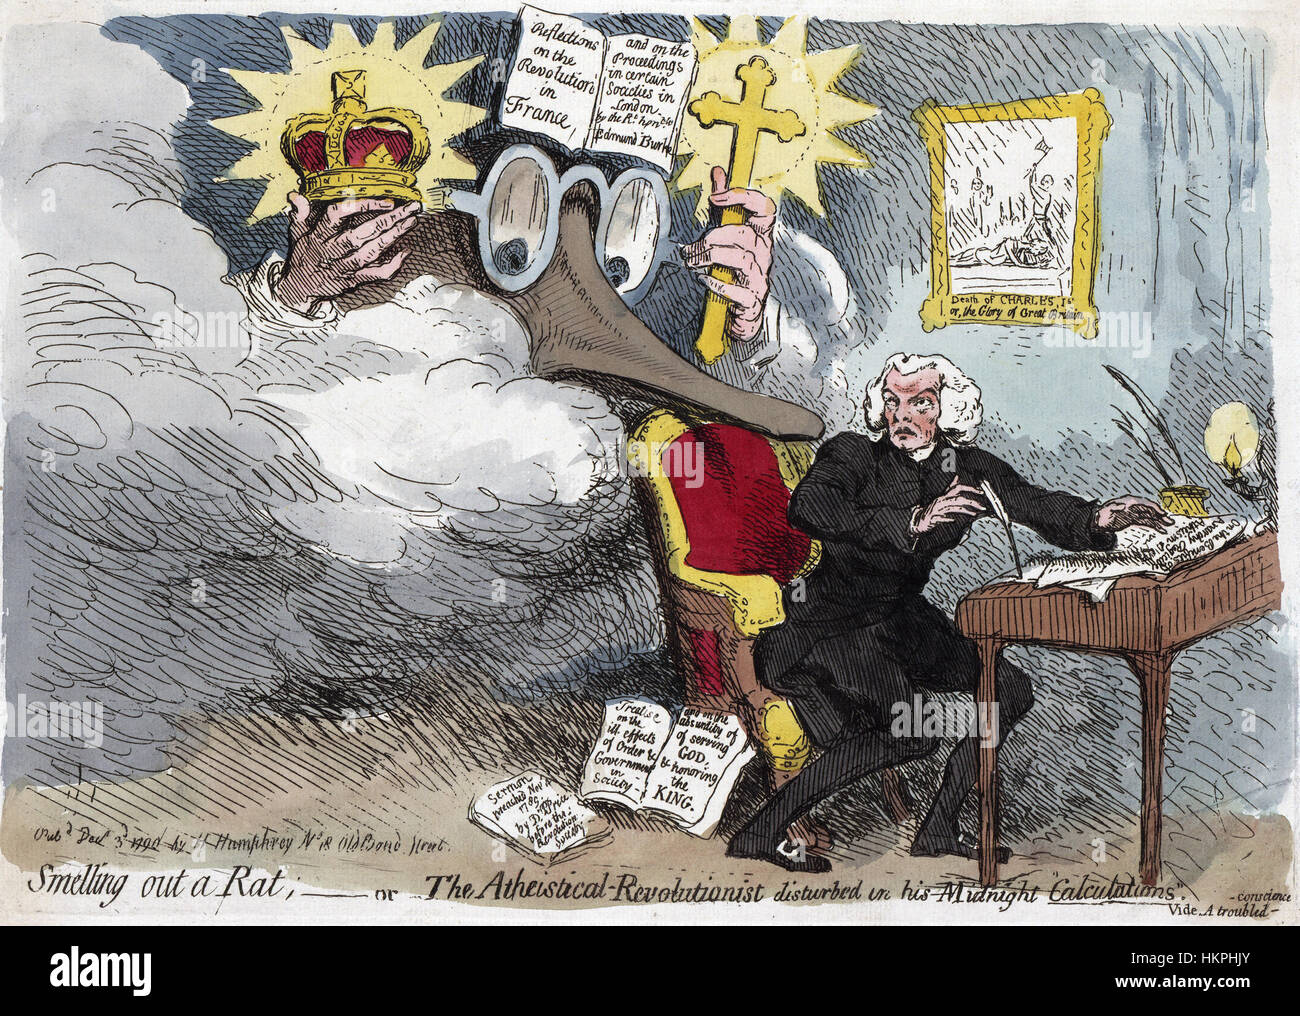 EDMUND BURKE (1729-1797) irischer Staatsmann Fassadendesign in einem 1790 Karikatur von James Gillray. Burkes lange Nase ist Dr. Richard Price drängen, ein Stück "Auf die Vorteile der Anarchie Königsmord Atheismus" schreibt. An der Wand hängt ein Bild mit der Durchführung von Charles ich Stockfoto